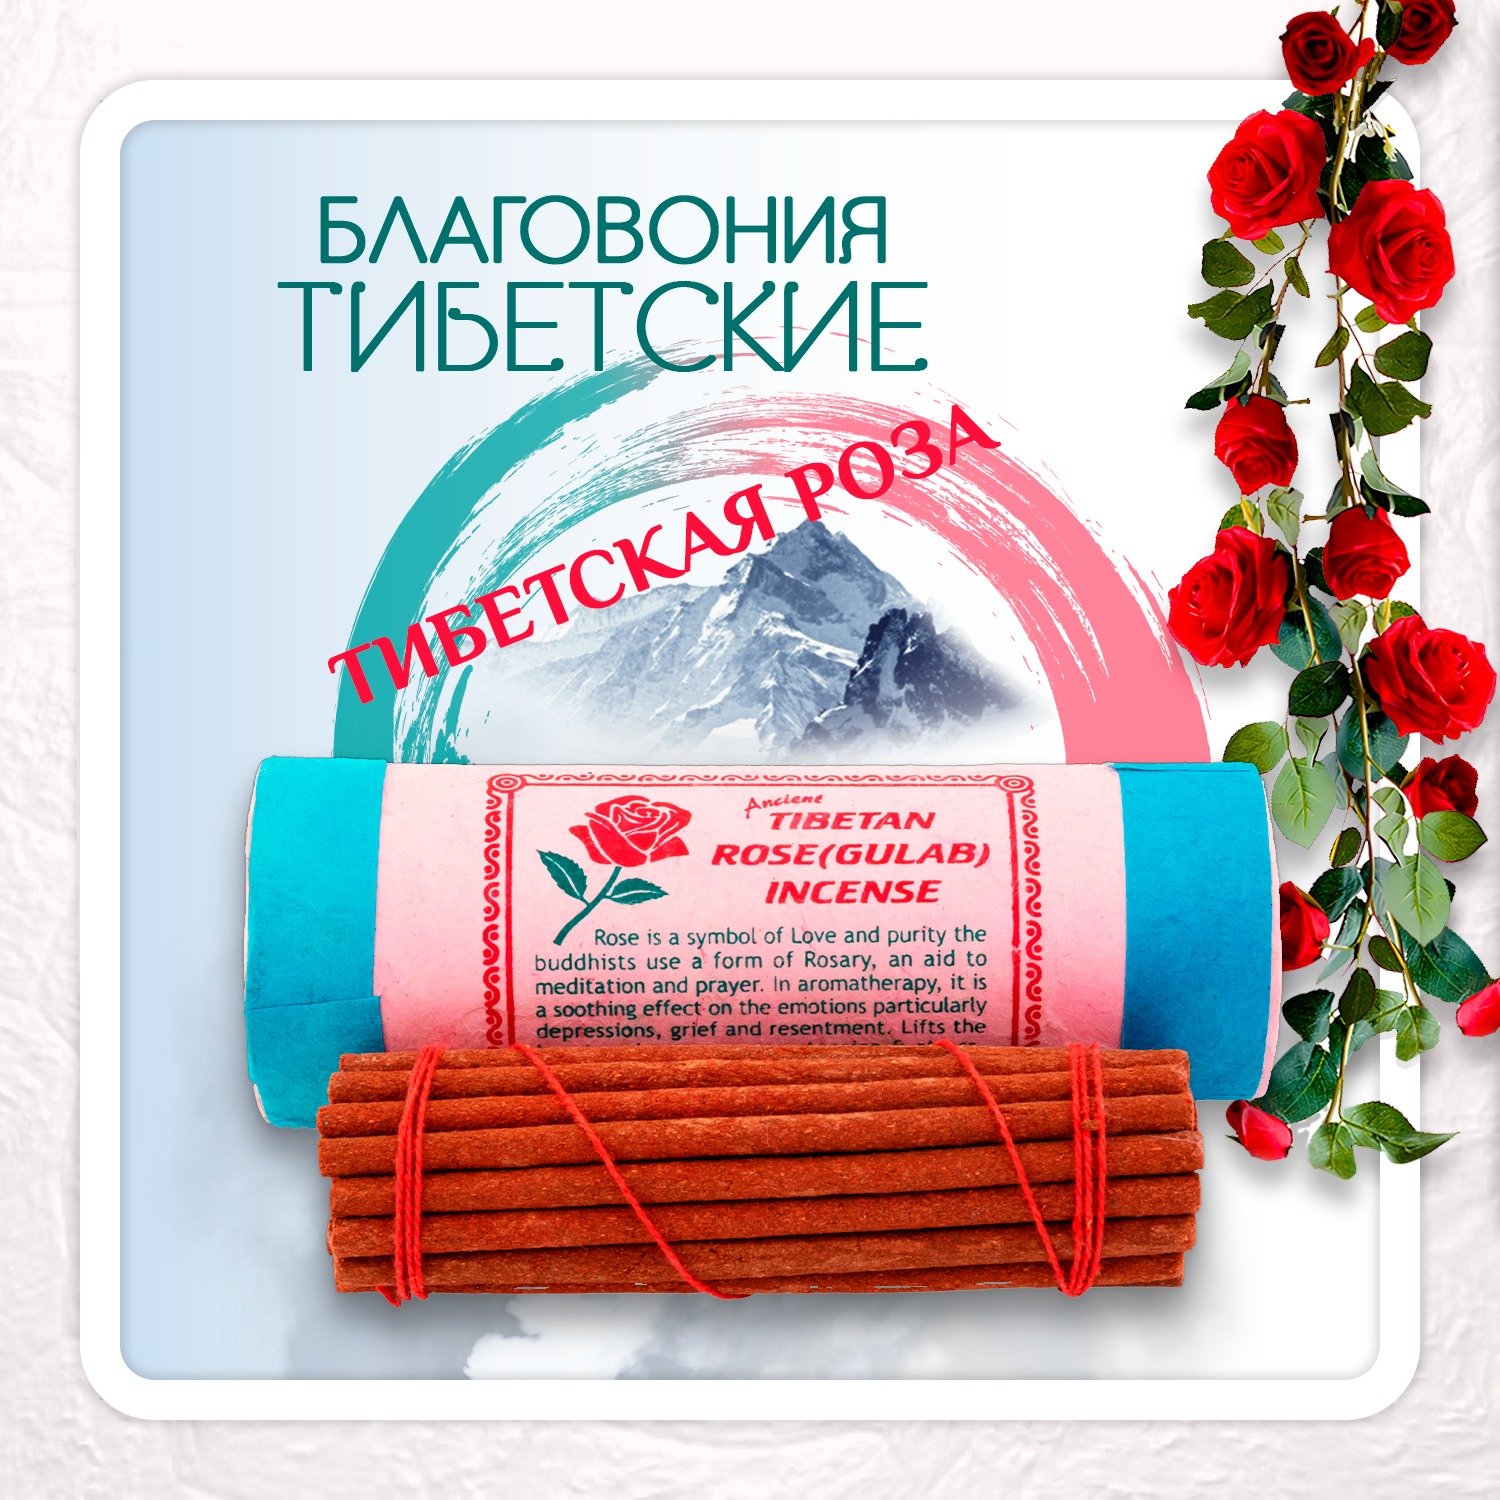 Благовоние Tibetan Rose Gulab Incense / роза, 30 палочек по 11 см. 